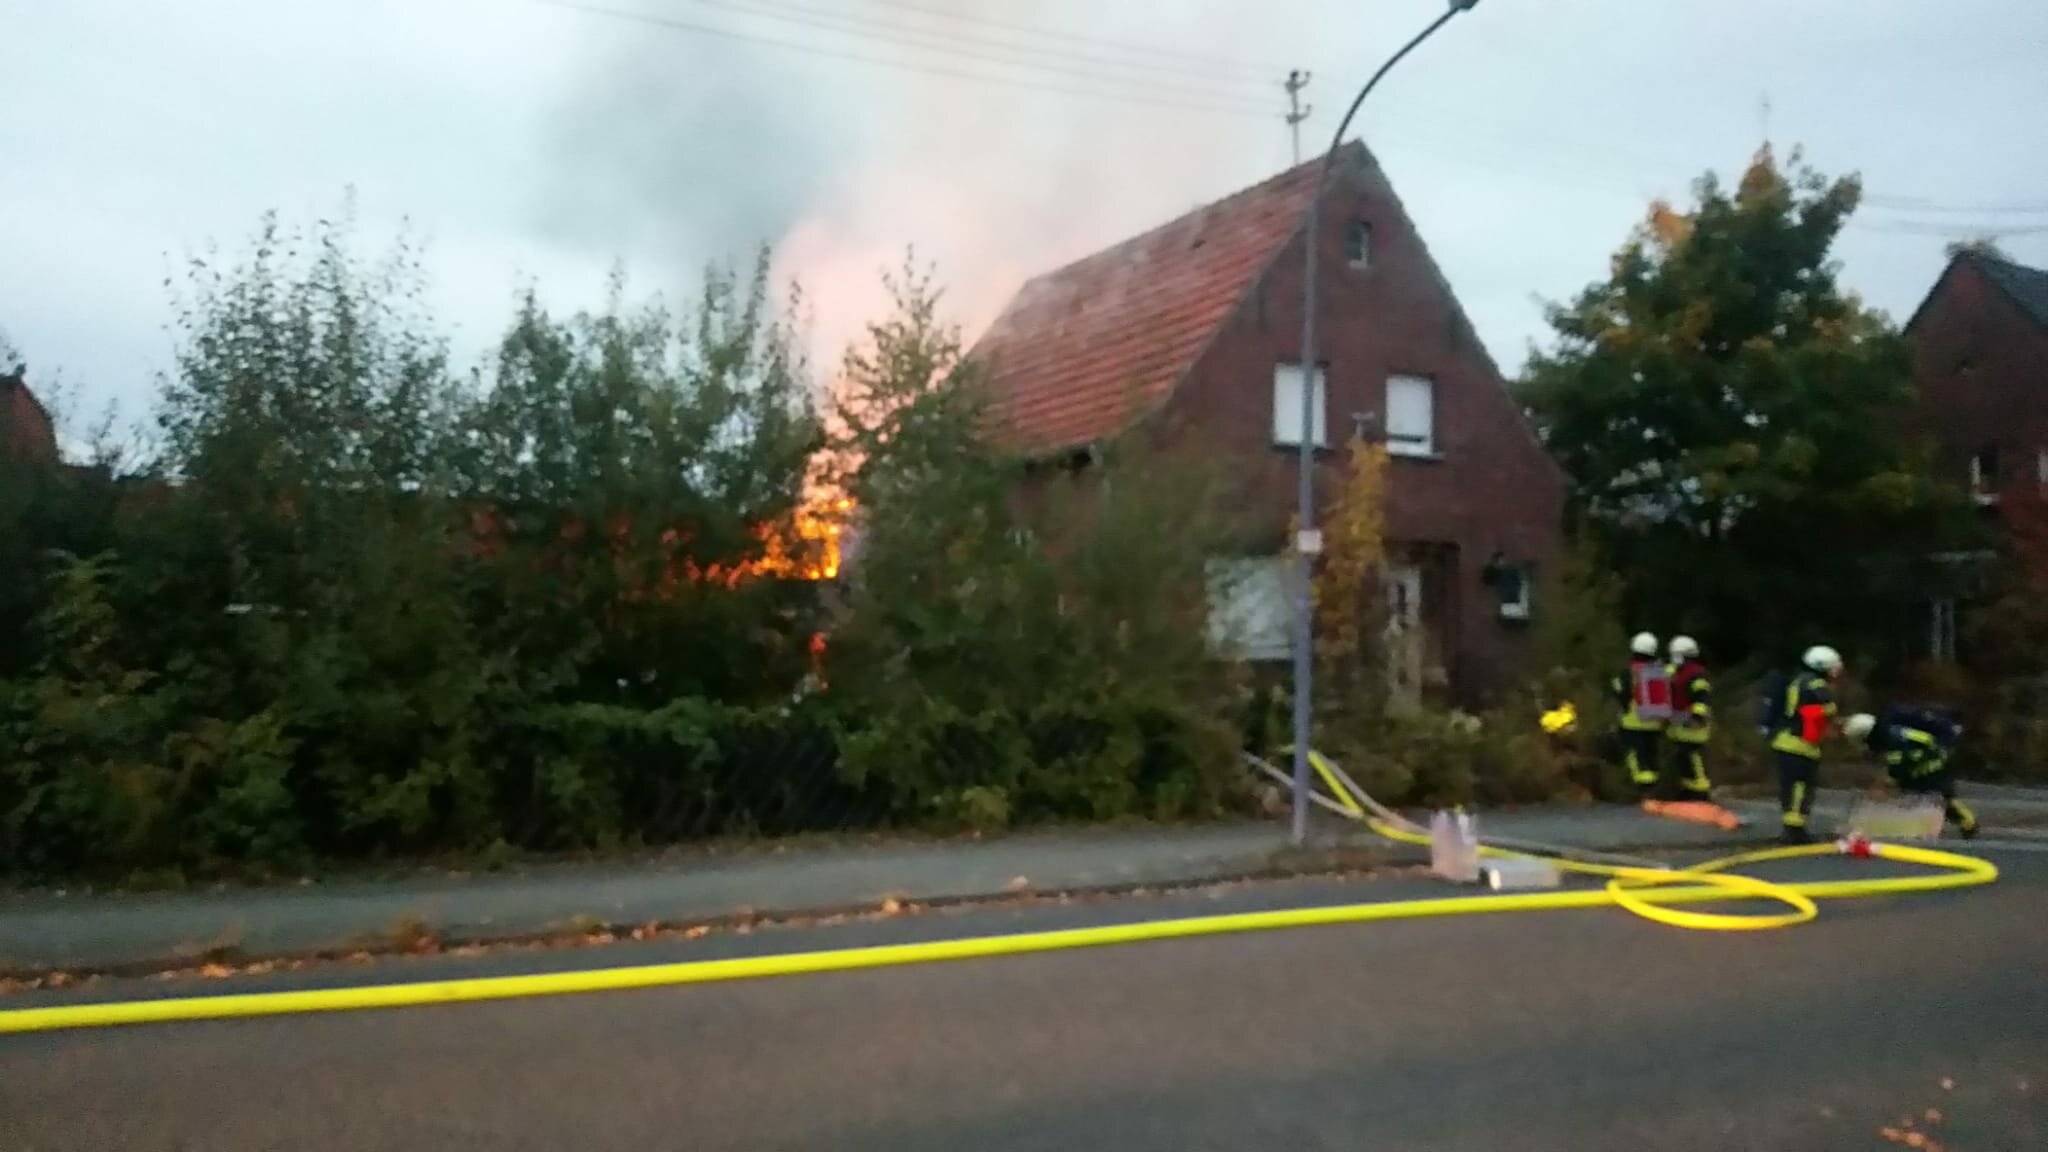  Die Feuerwehr wurde am Sonntag um kurz nach 18.30 Uhr zu einem Brandereignis auf die Luisenstraße in Stadtteil Büttgen gerufen.  